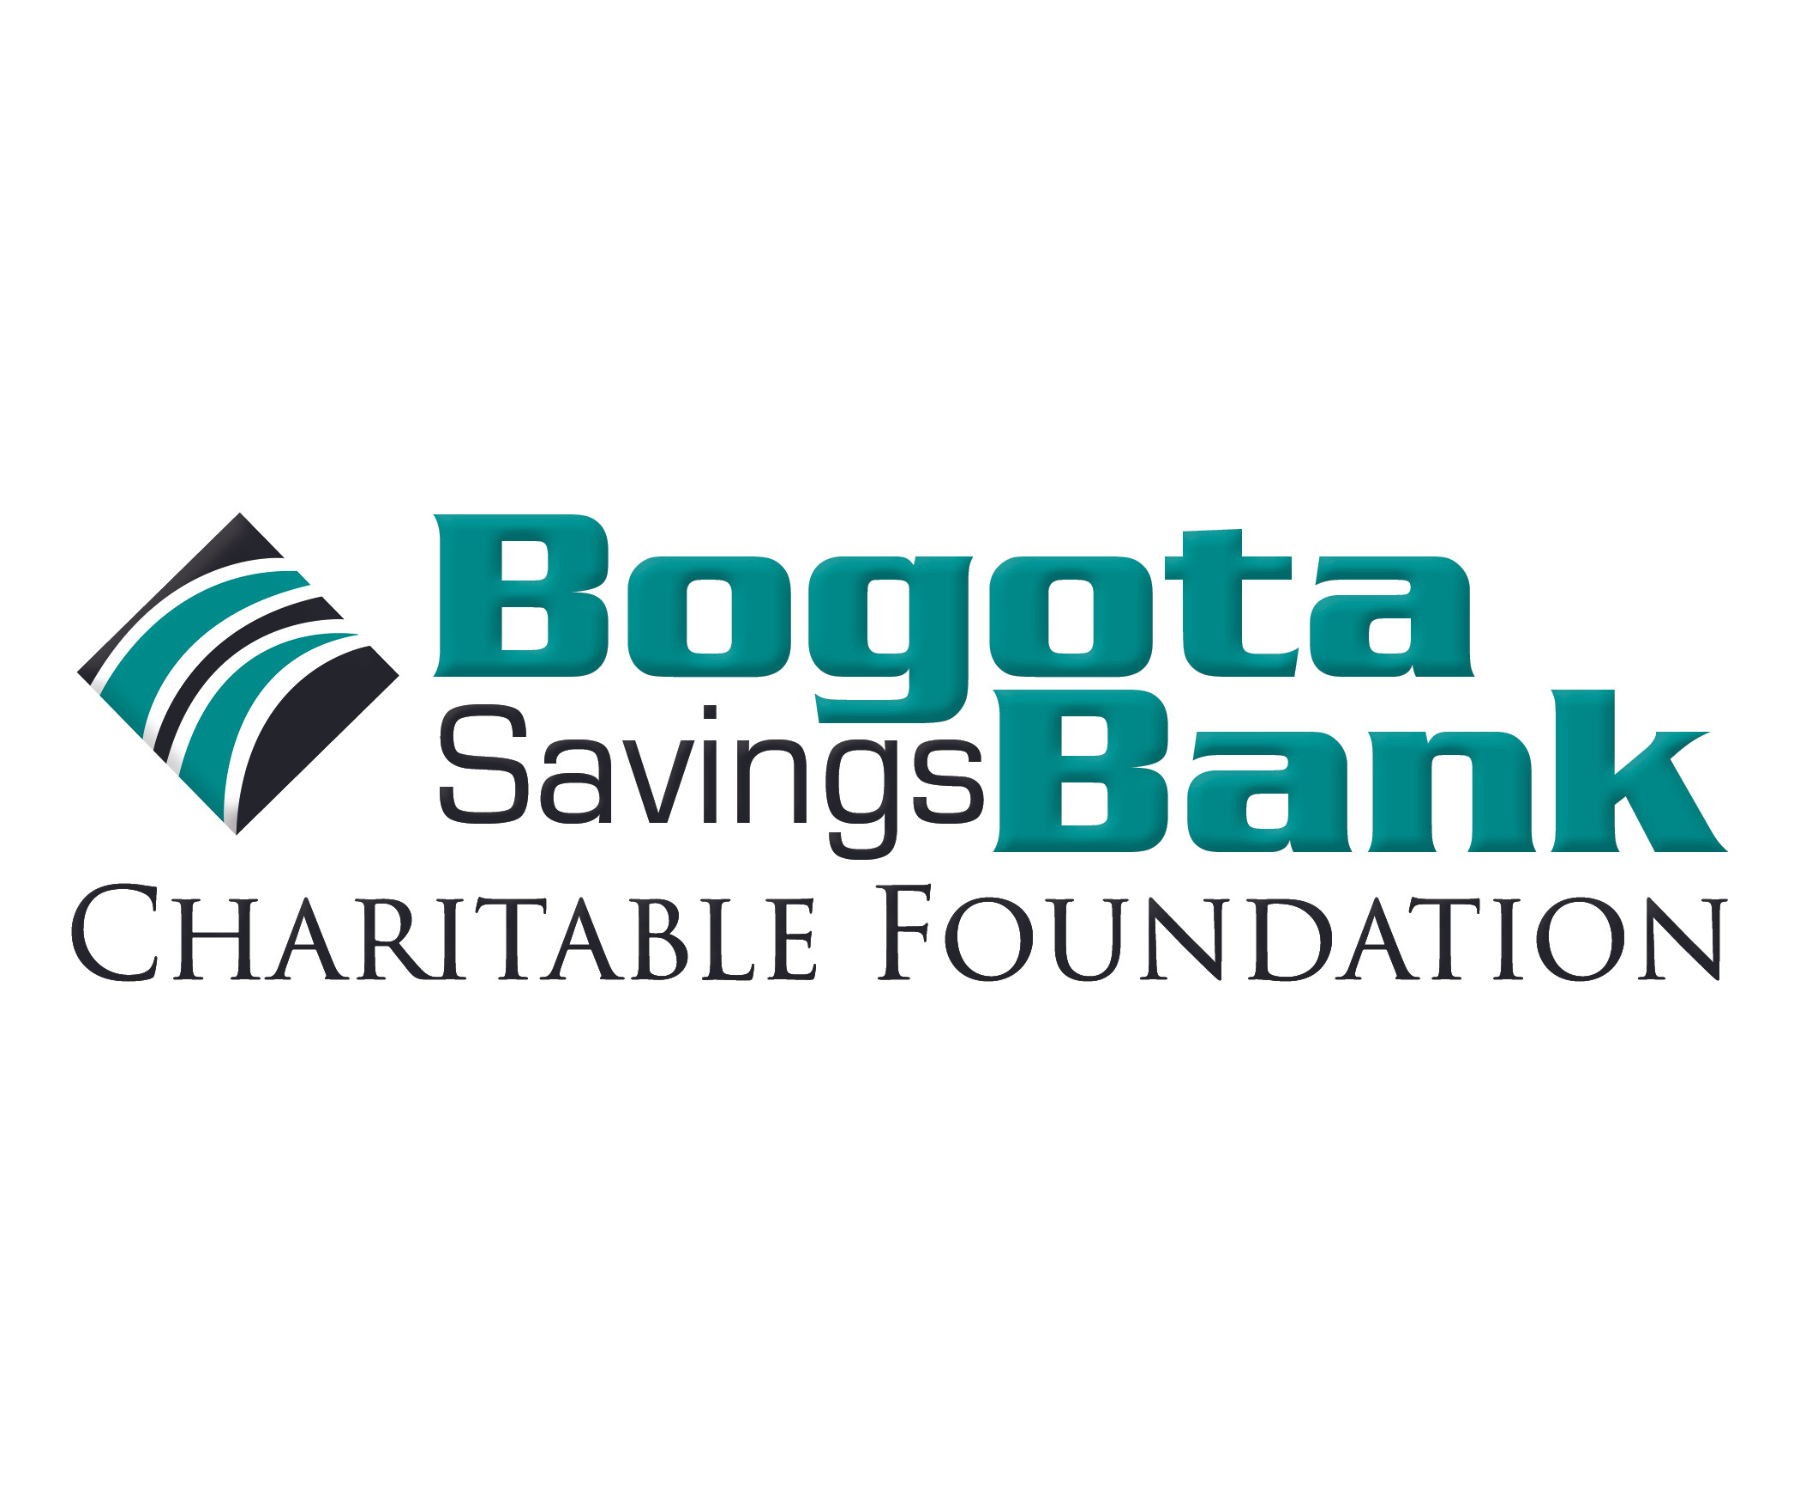 Bogota Savings Bank Charitable Foundation